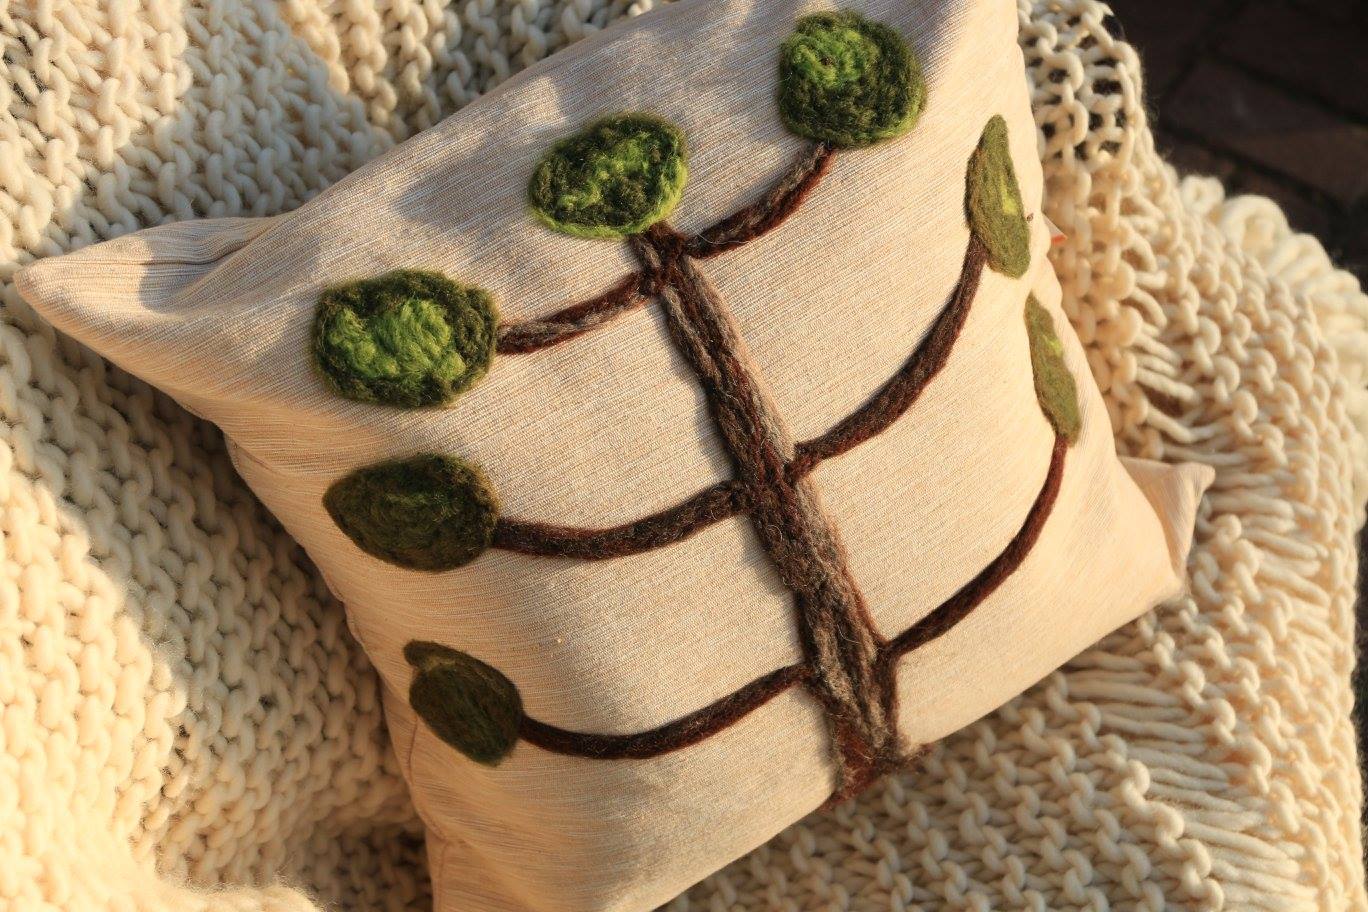 Almofada araucária em feltragem de lã natural, sobre uma capa de tecido 100% algodão com fechamento em zíper.